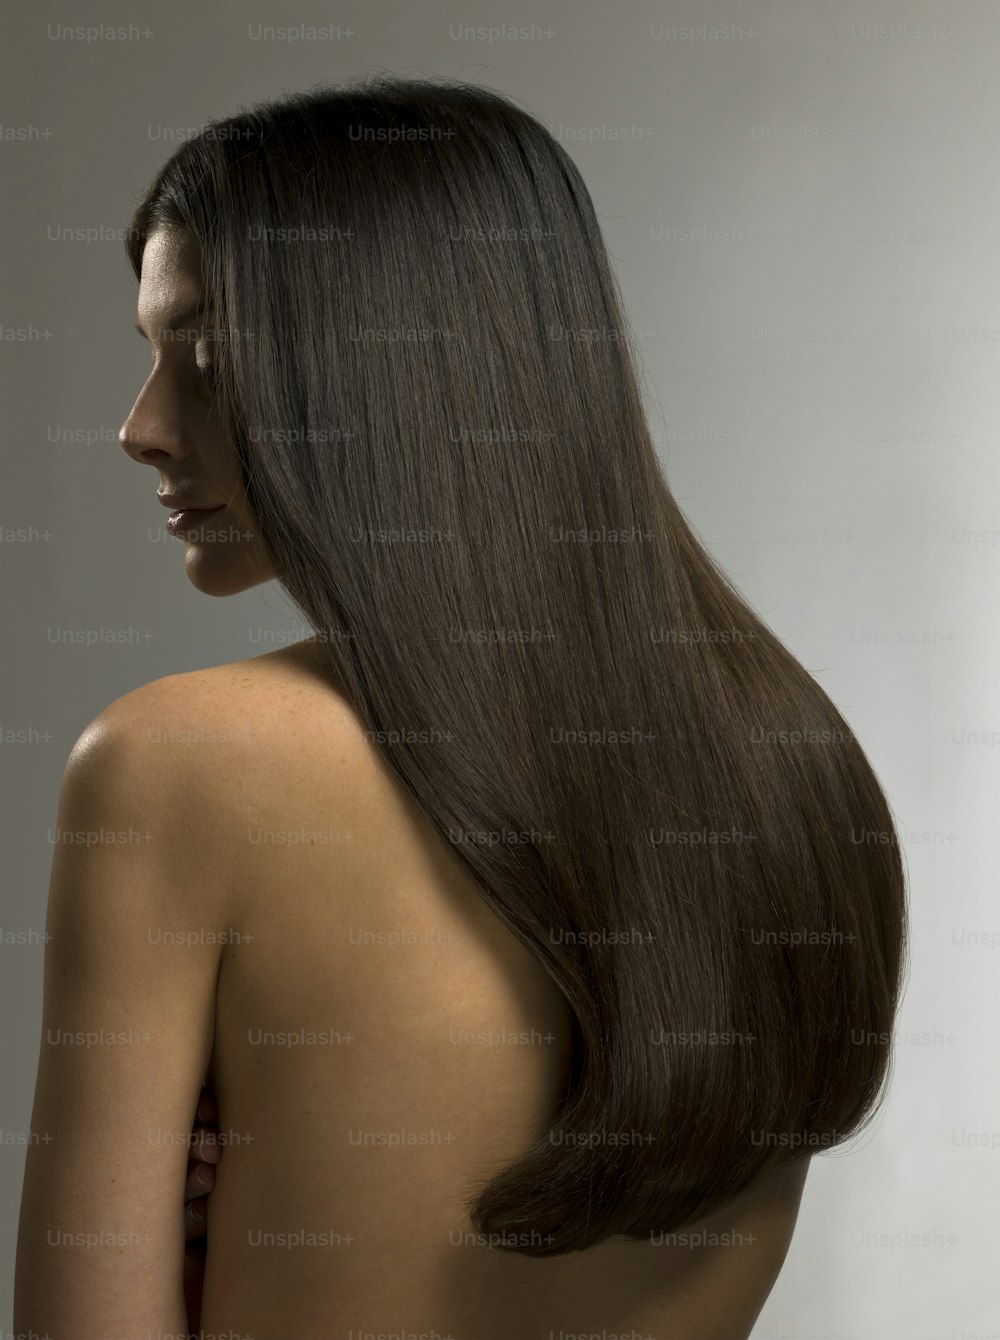 Una mujer con cabello largo y castaño parada frente a una pared blanca